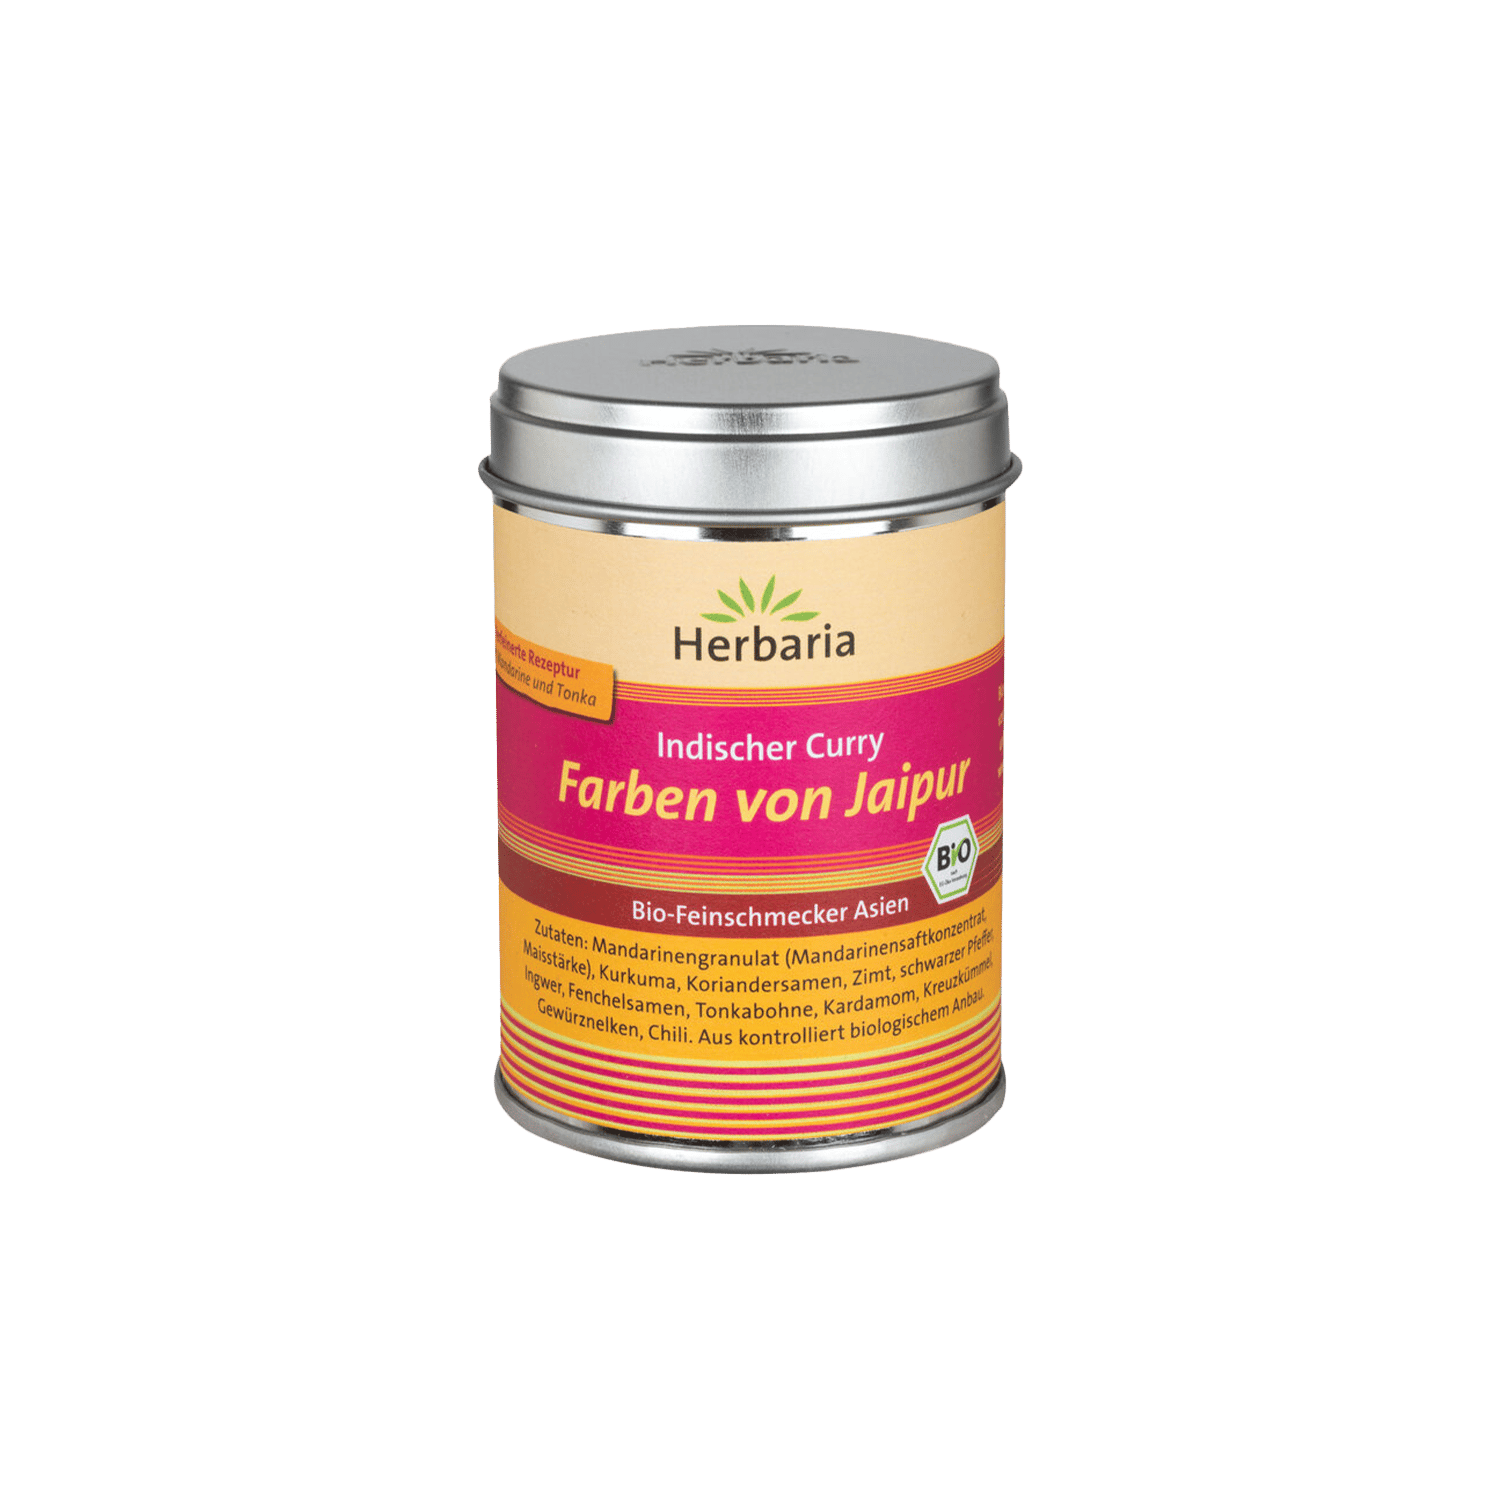 Spice Mix Indian Curry "Farben Von Jaipur", Organic, 80g